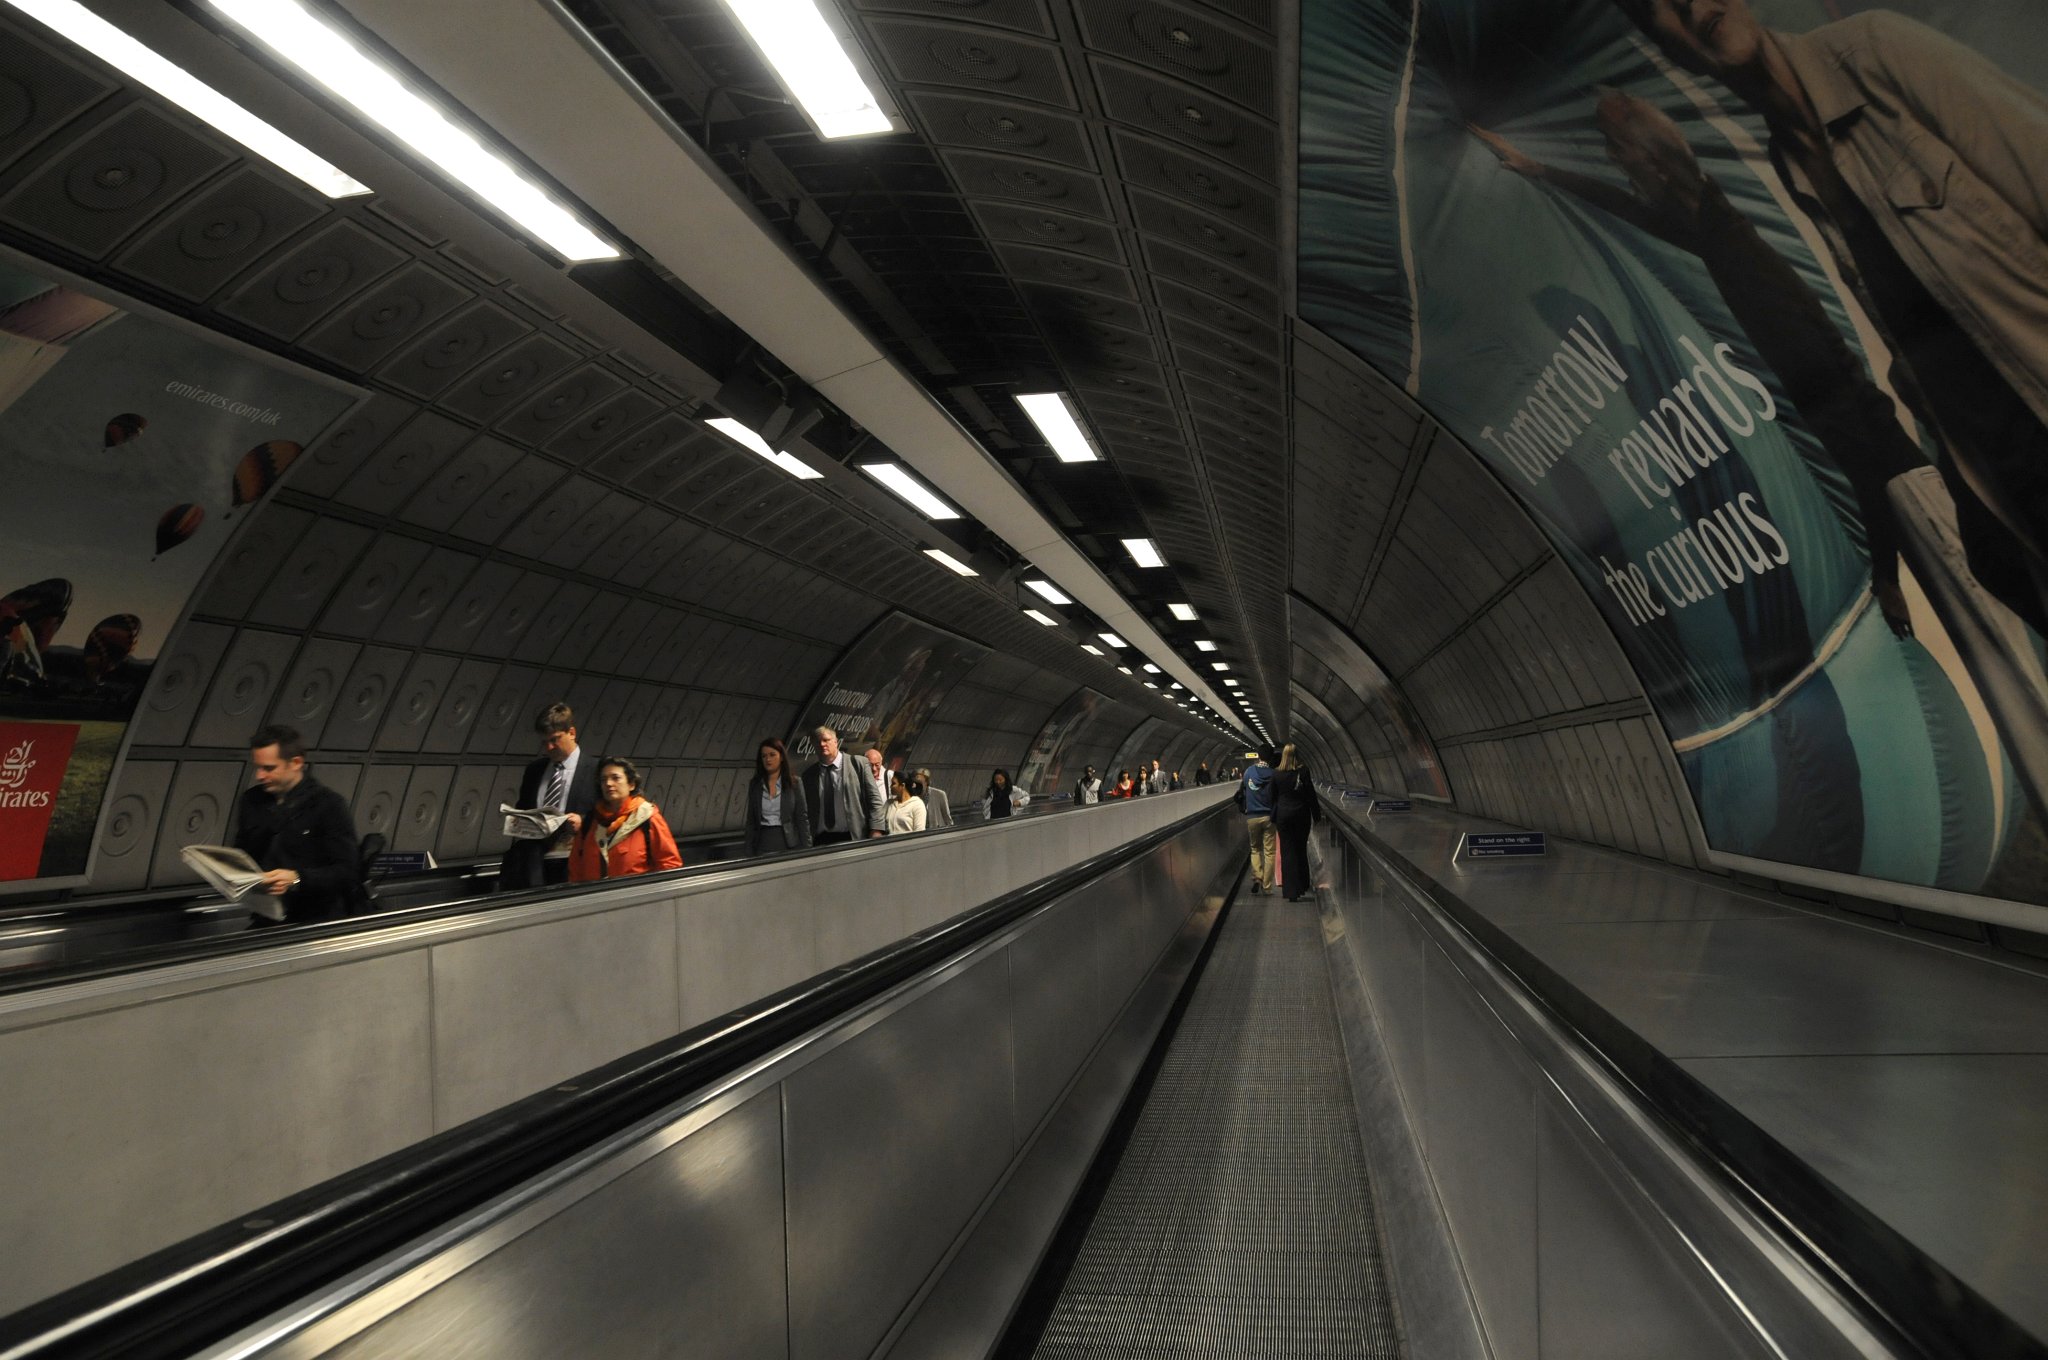 DSC_3961_2.jpg - Travelátor ve staanici metra Waterloo.